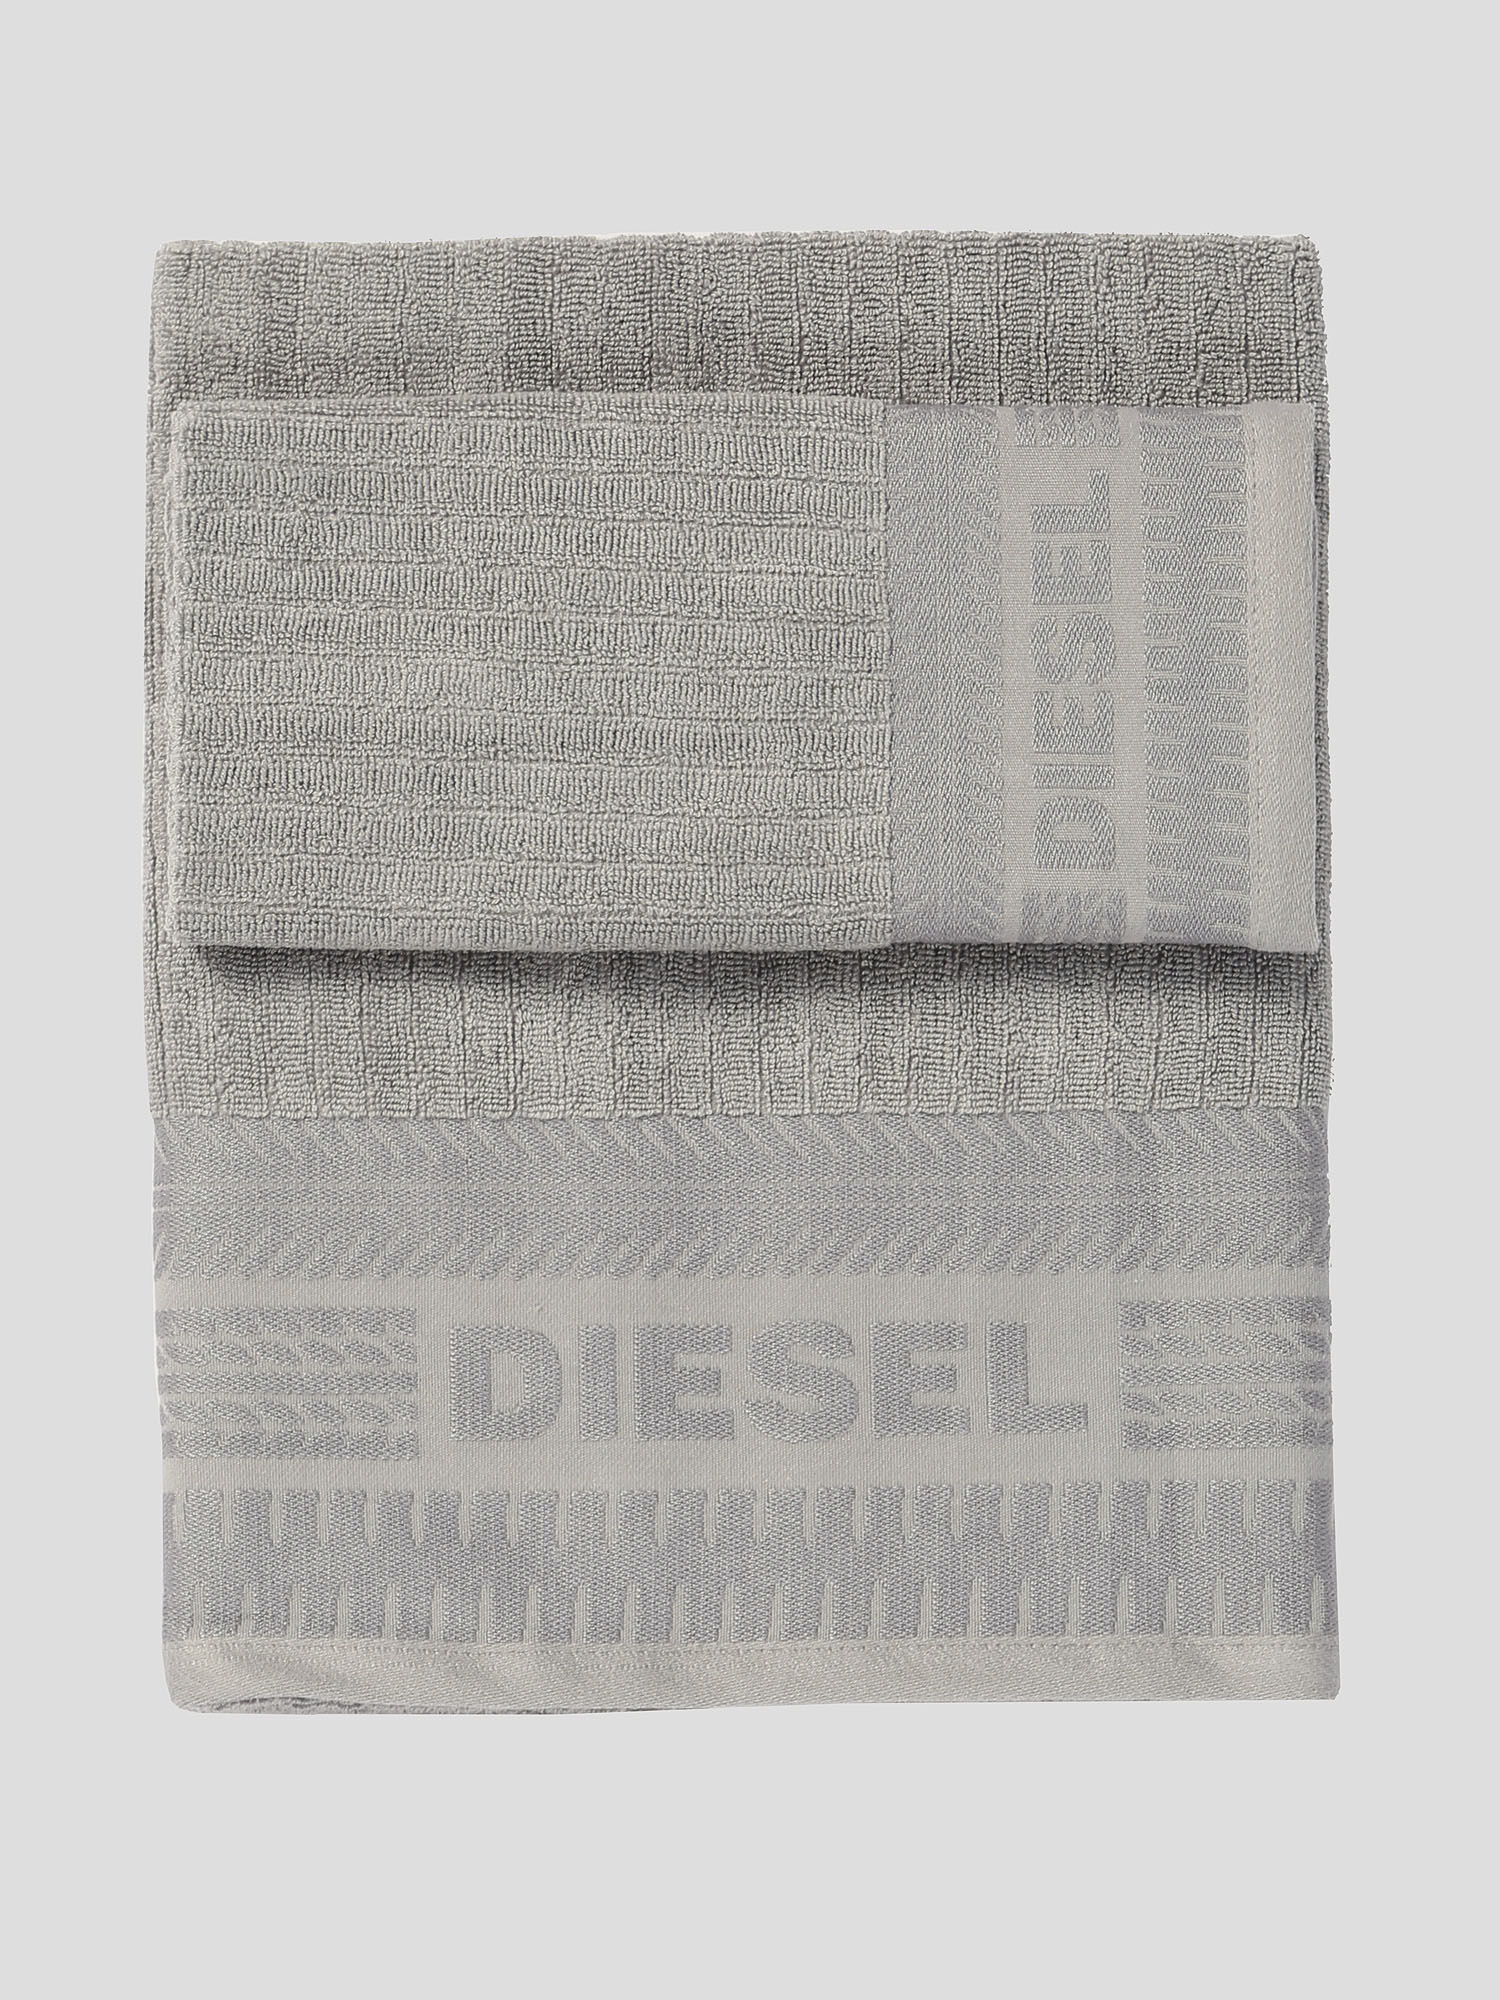 Diesel - 72326 SOLID, Grey - Image 1